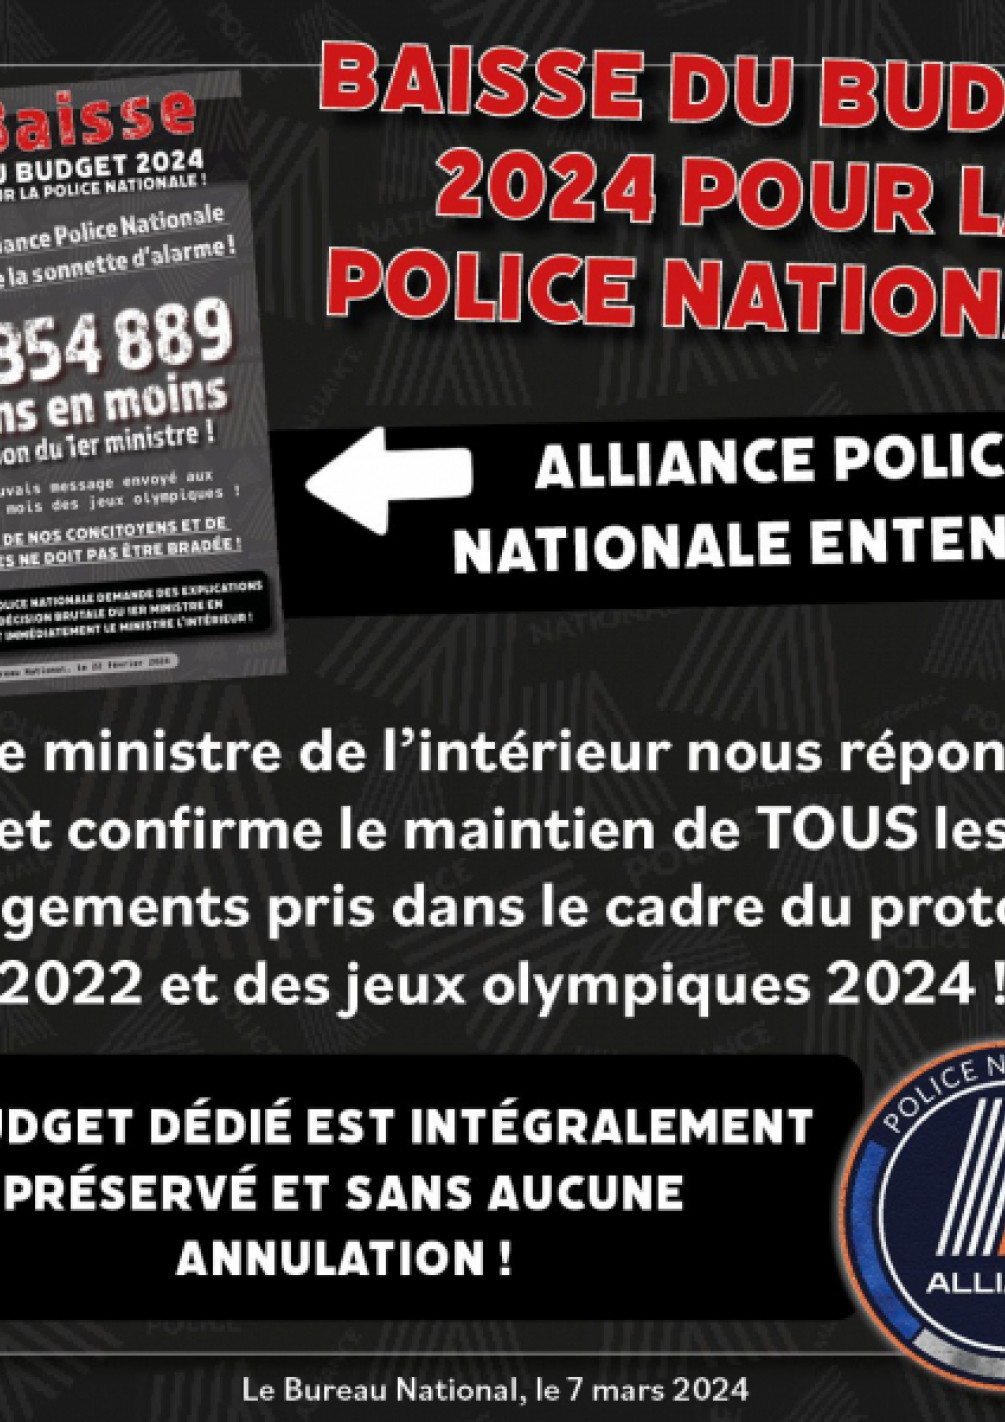 Baisse du budget de la police nationale ; Alliance PN entendu